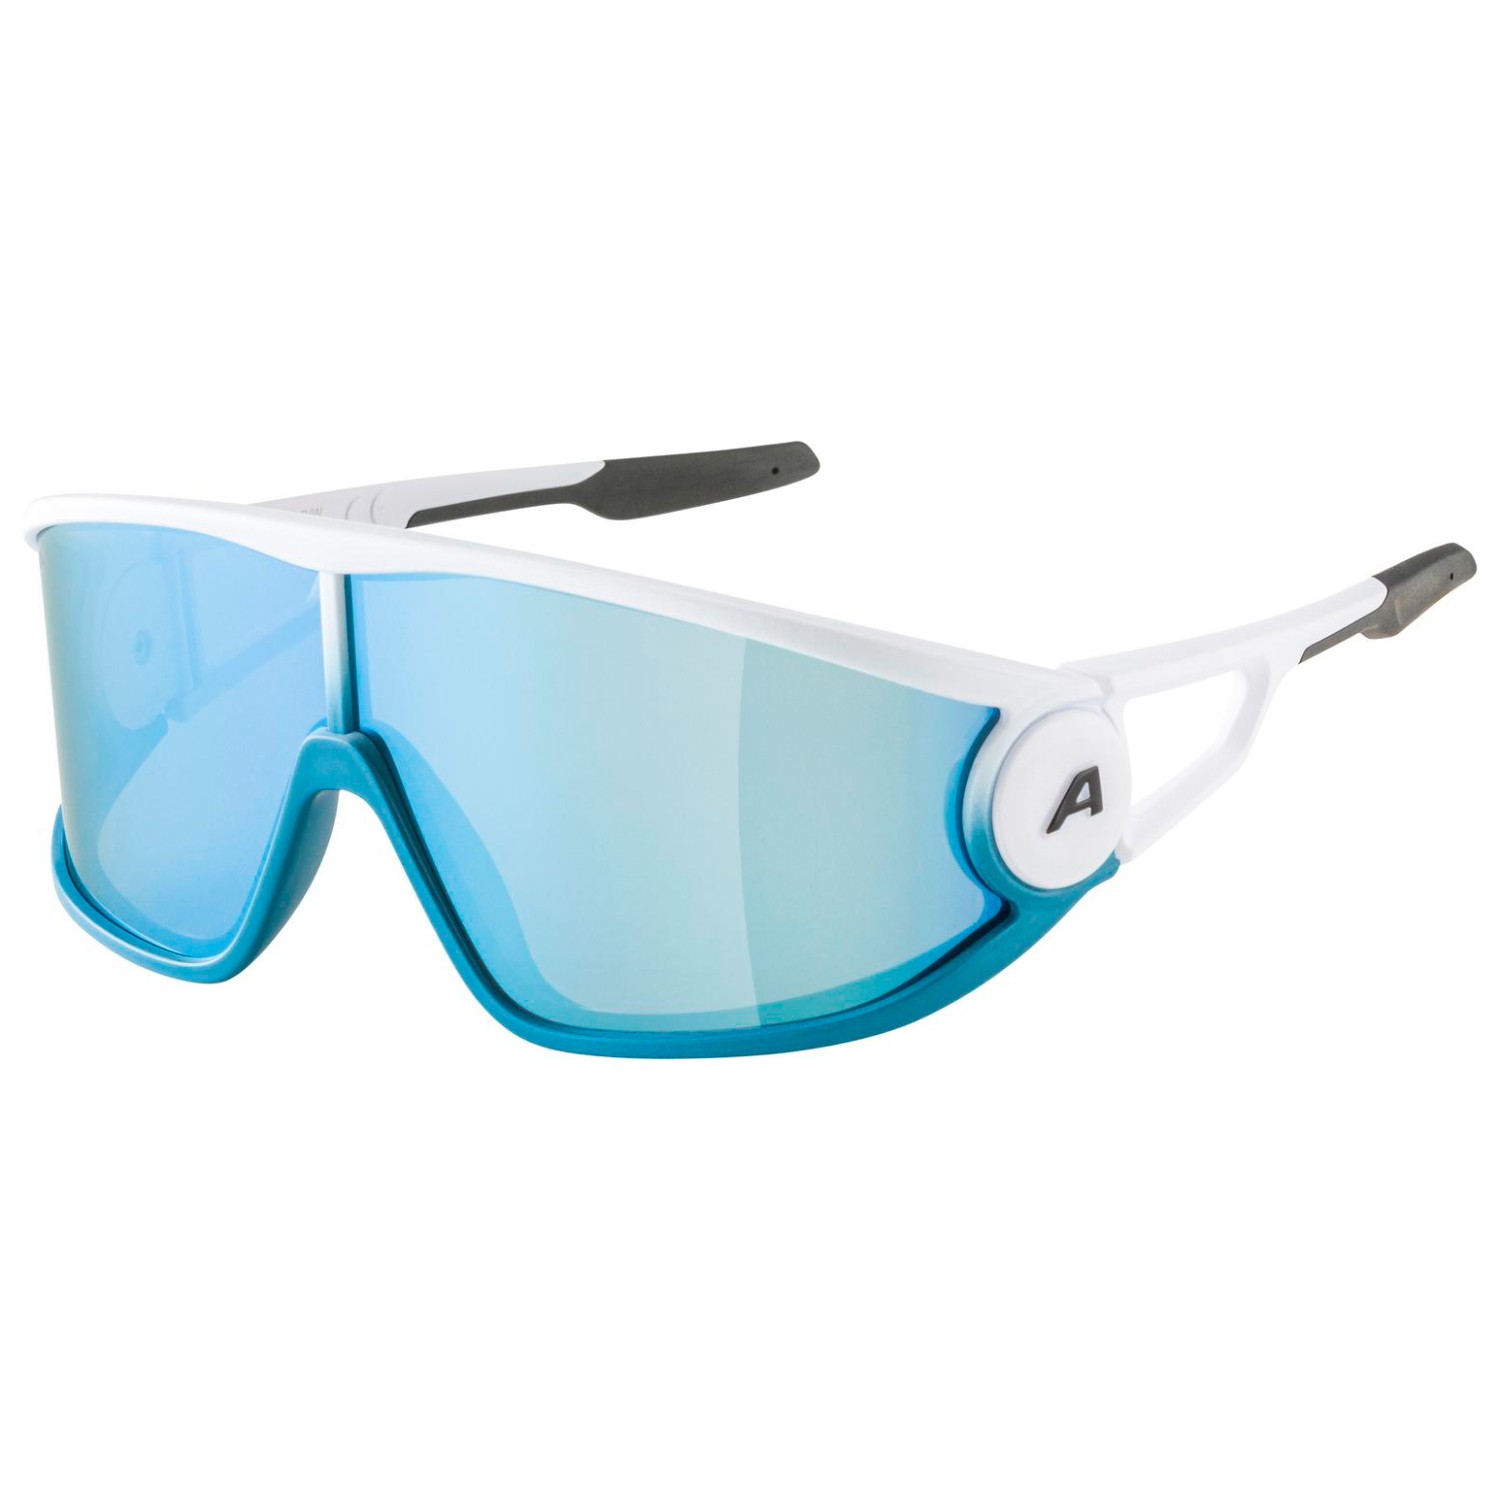 Солнцезащитные очки Alpina Legend Mirror Cat 3, цвет White Matt очки солнцезащитные alpina luzy белый пурпурный зеркальный a8571310